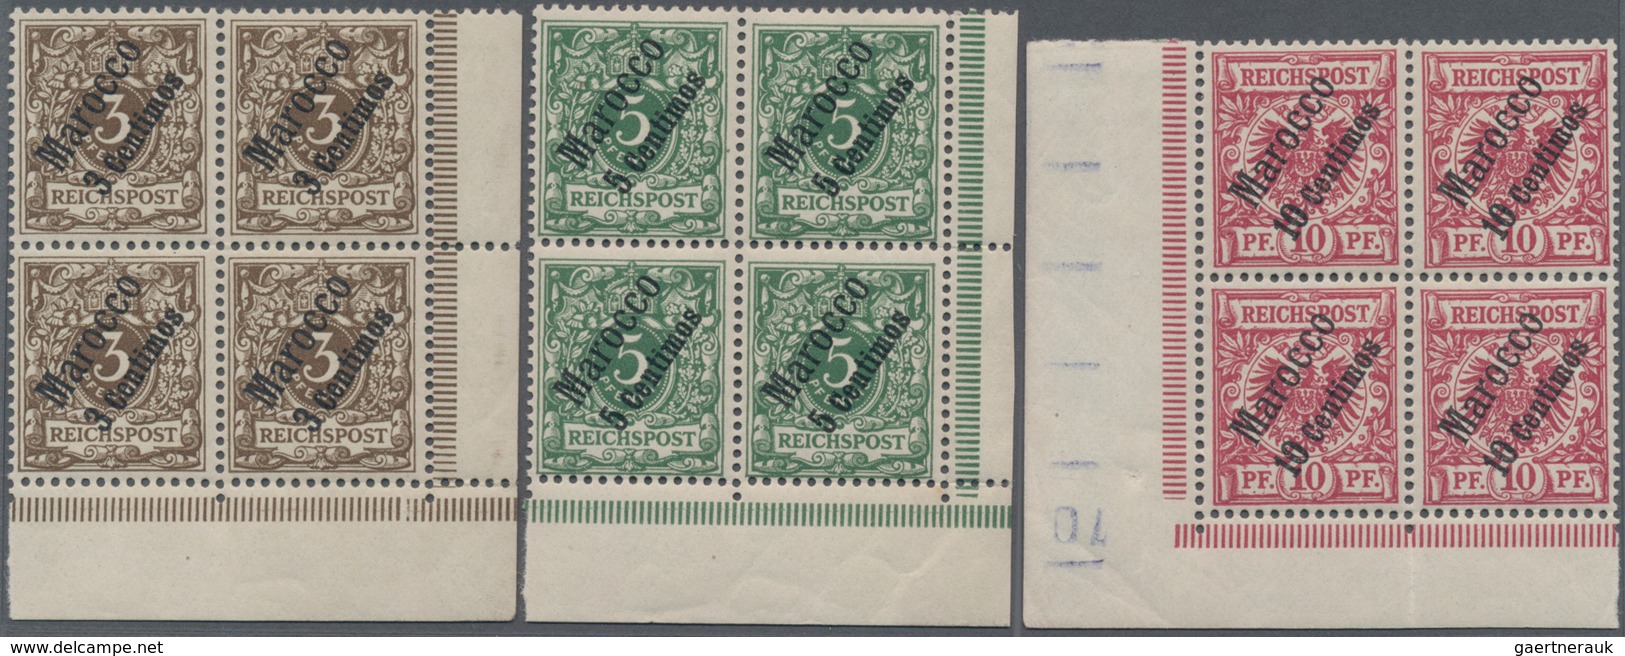 Deutsche Post In Marokko: 1899, Freimarken Krone Adler Mit Diagonalem Aufdruck "Marocco" Und Neuem W - Marokko (kantoren)